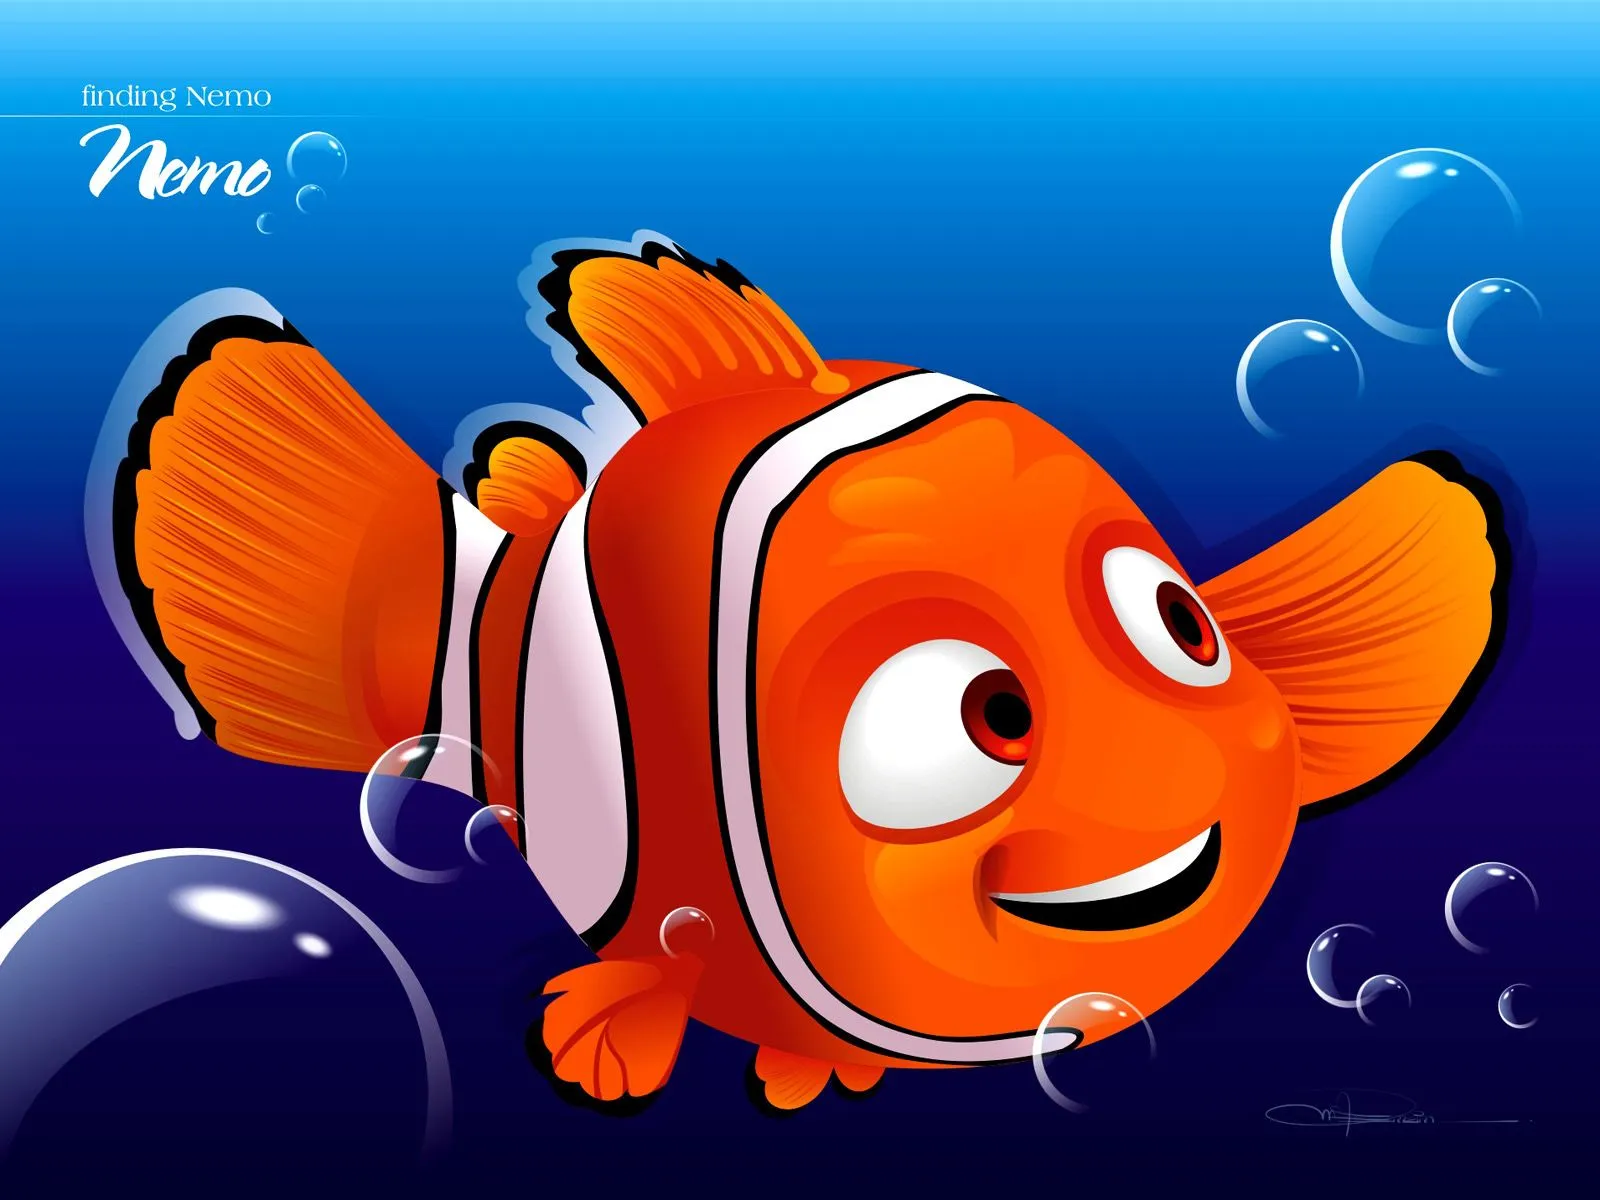 Imagenes de dibujos animados: Buscando a Nemo